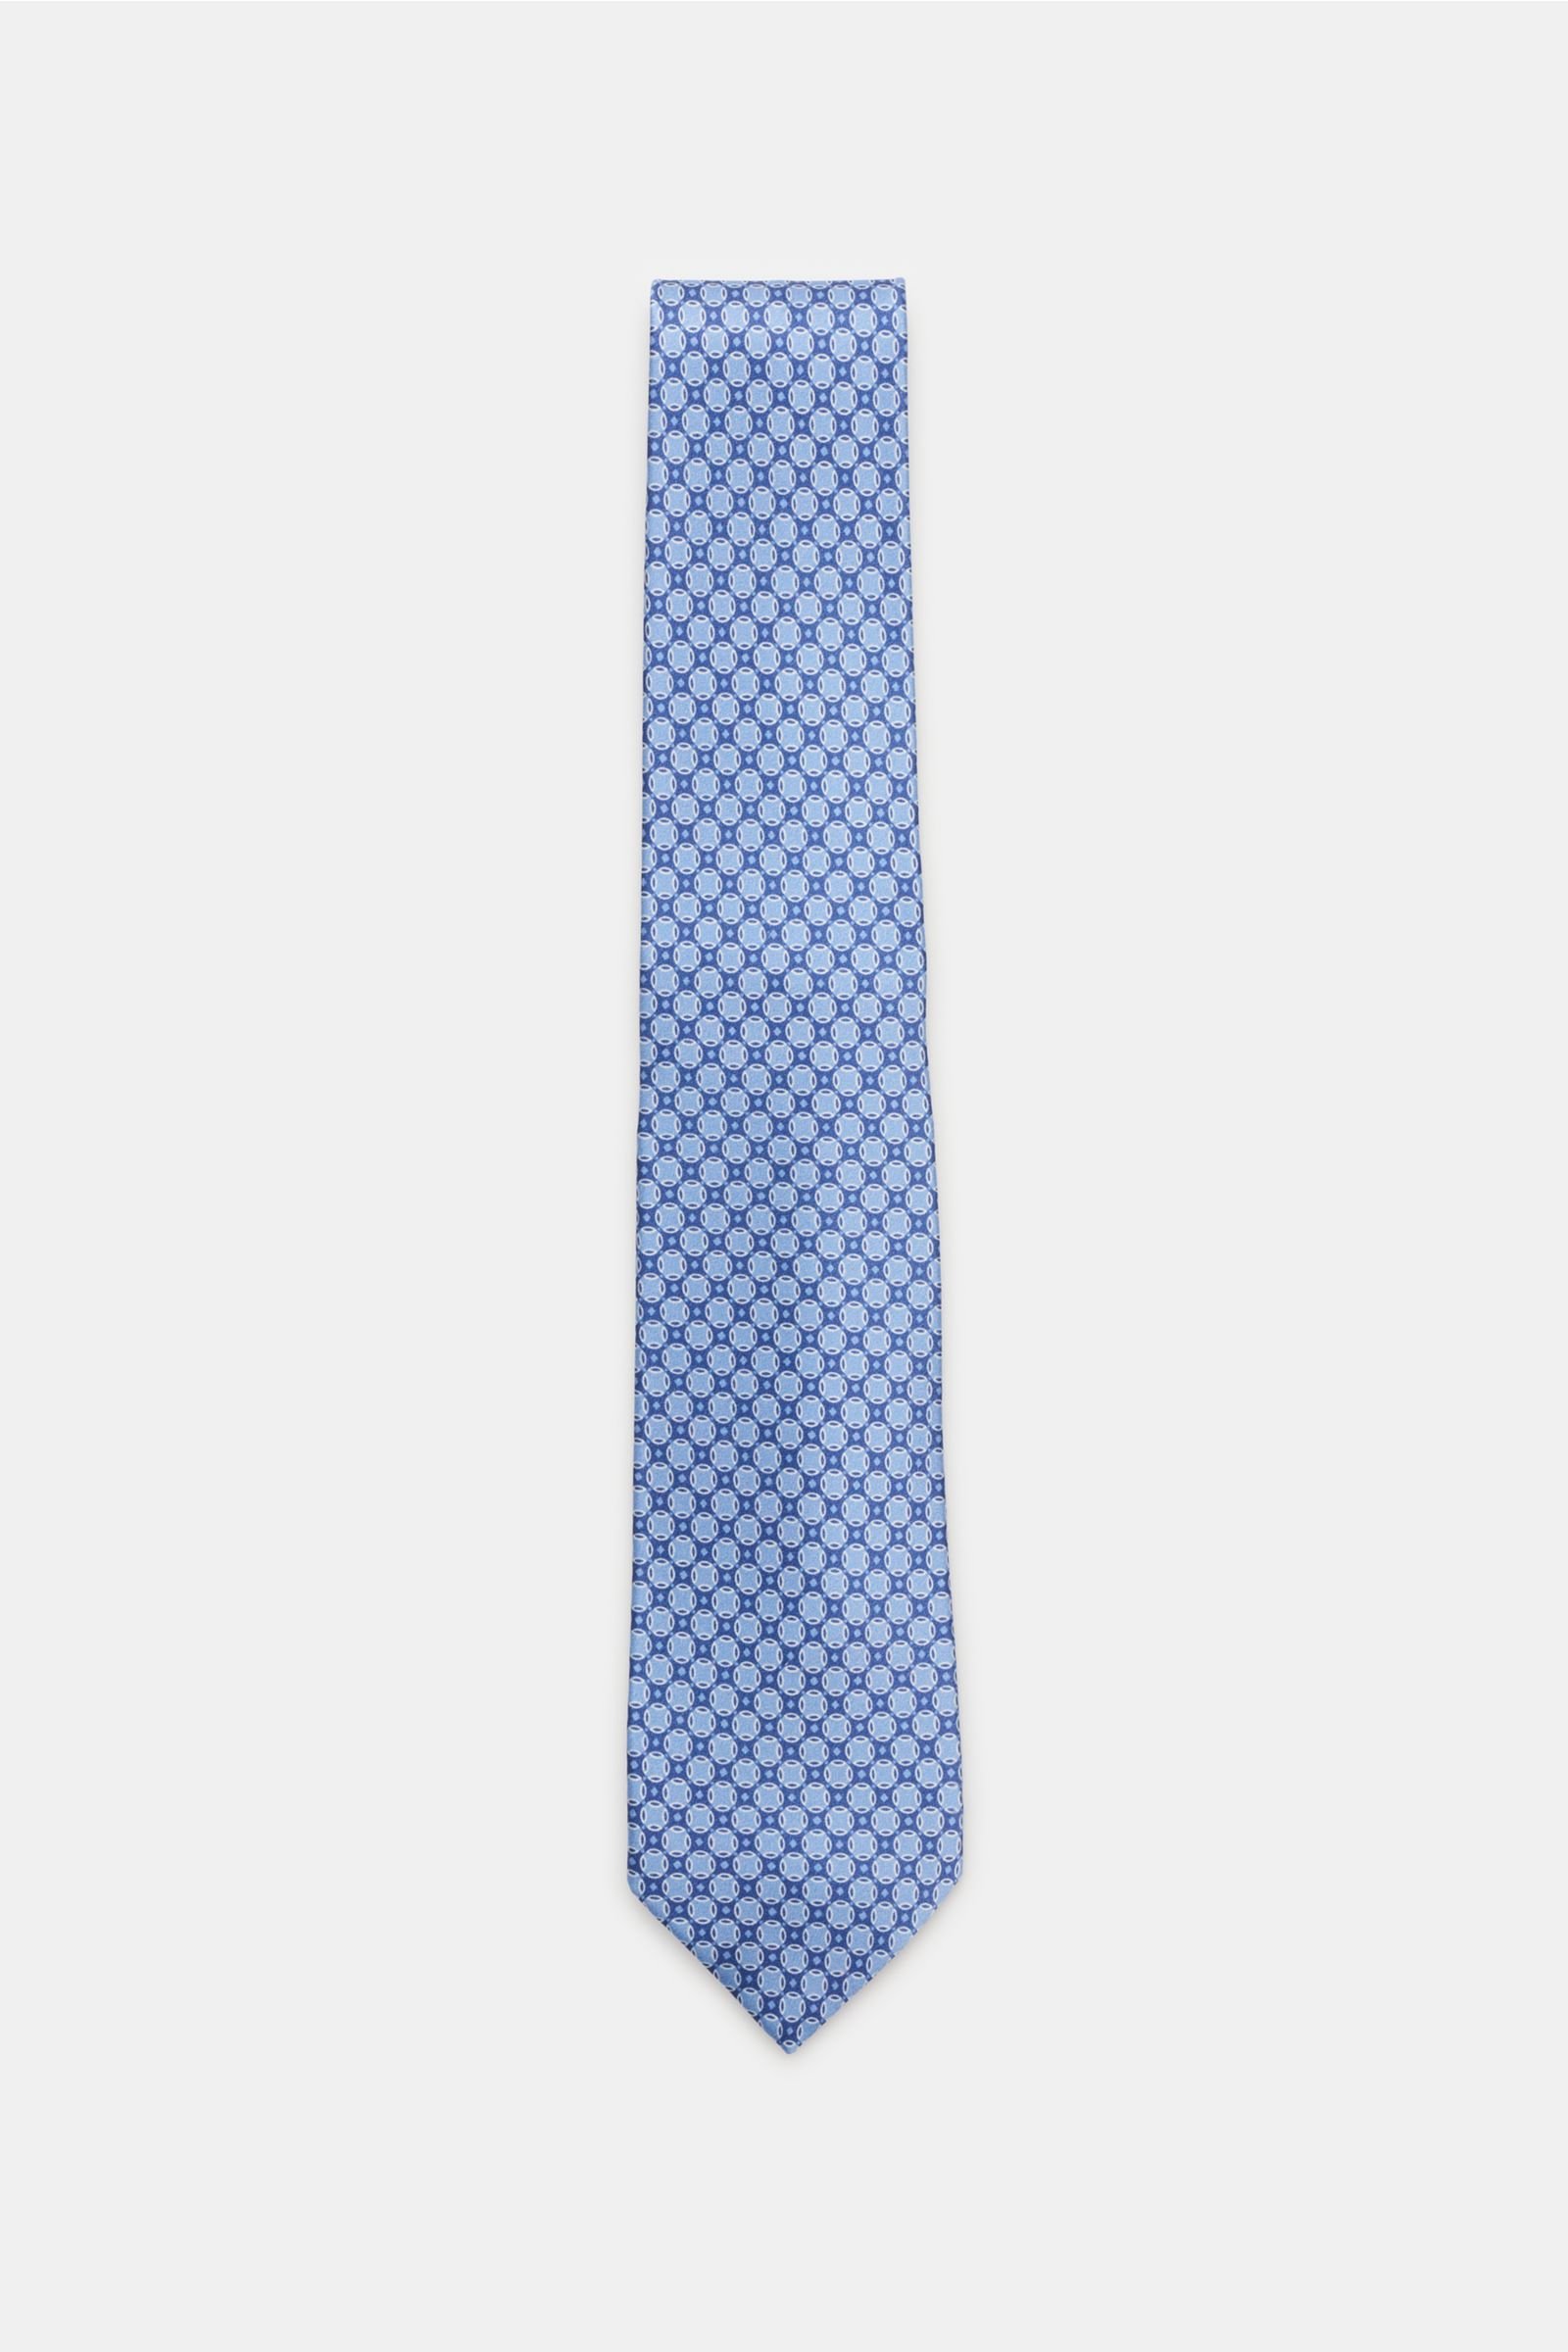 Silk tie smoky blue/navy patterned